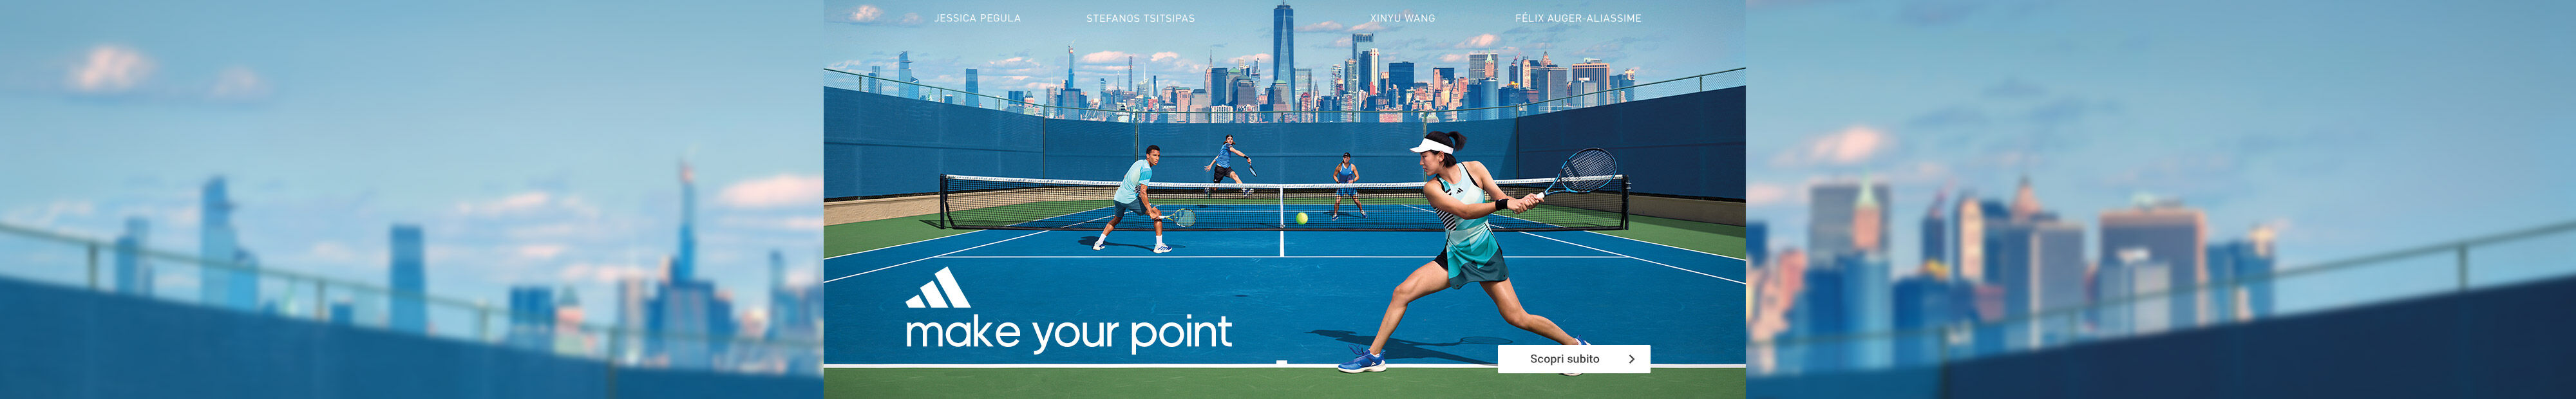 Tennis point Banner